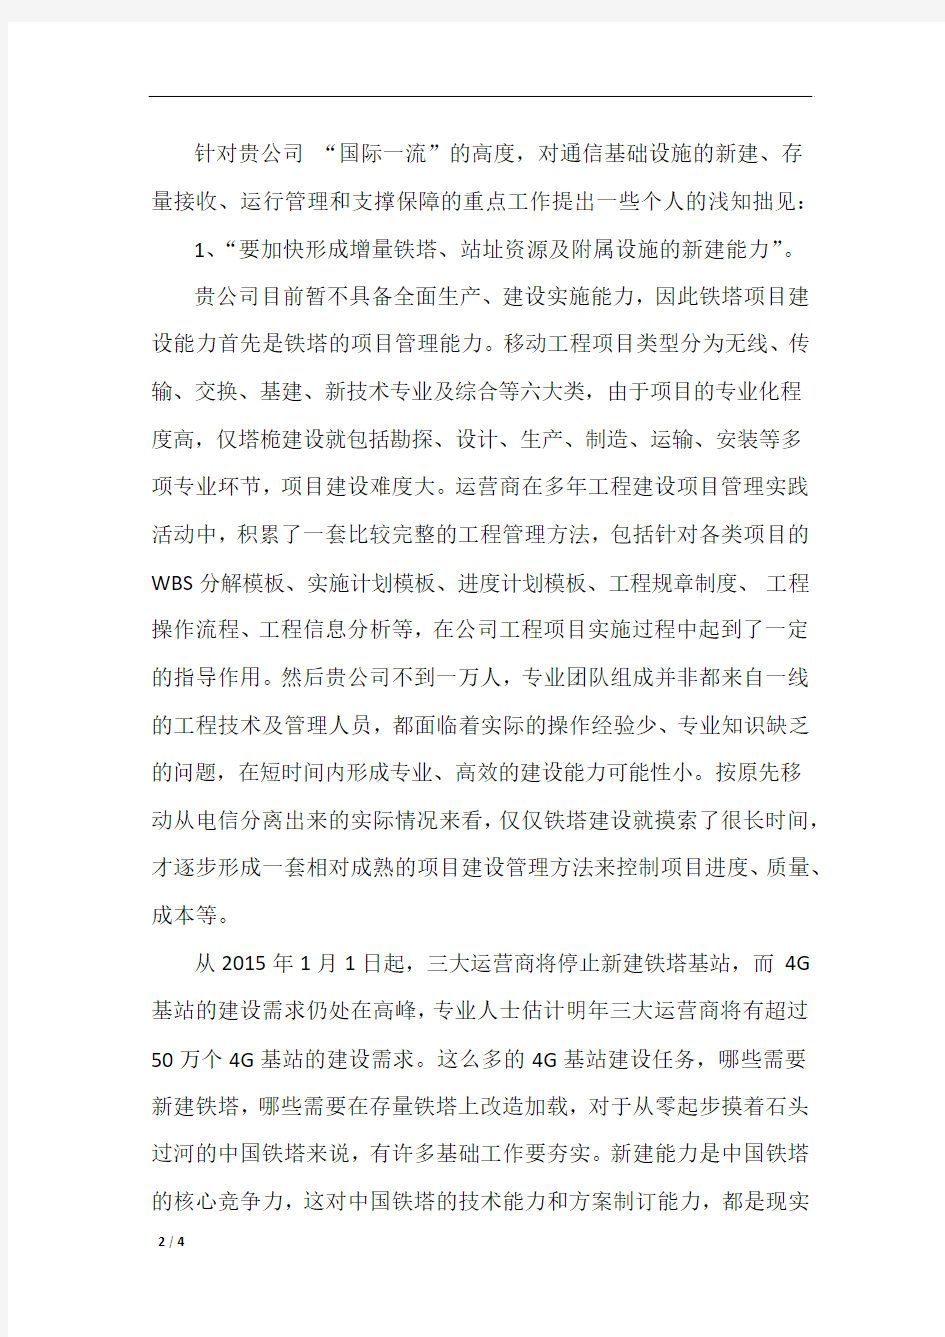 给中国铁塔公司总经理的一封信